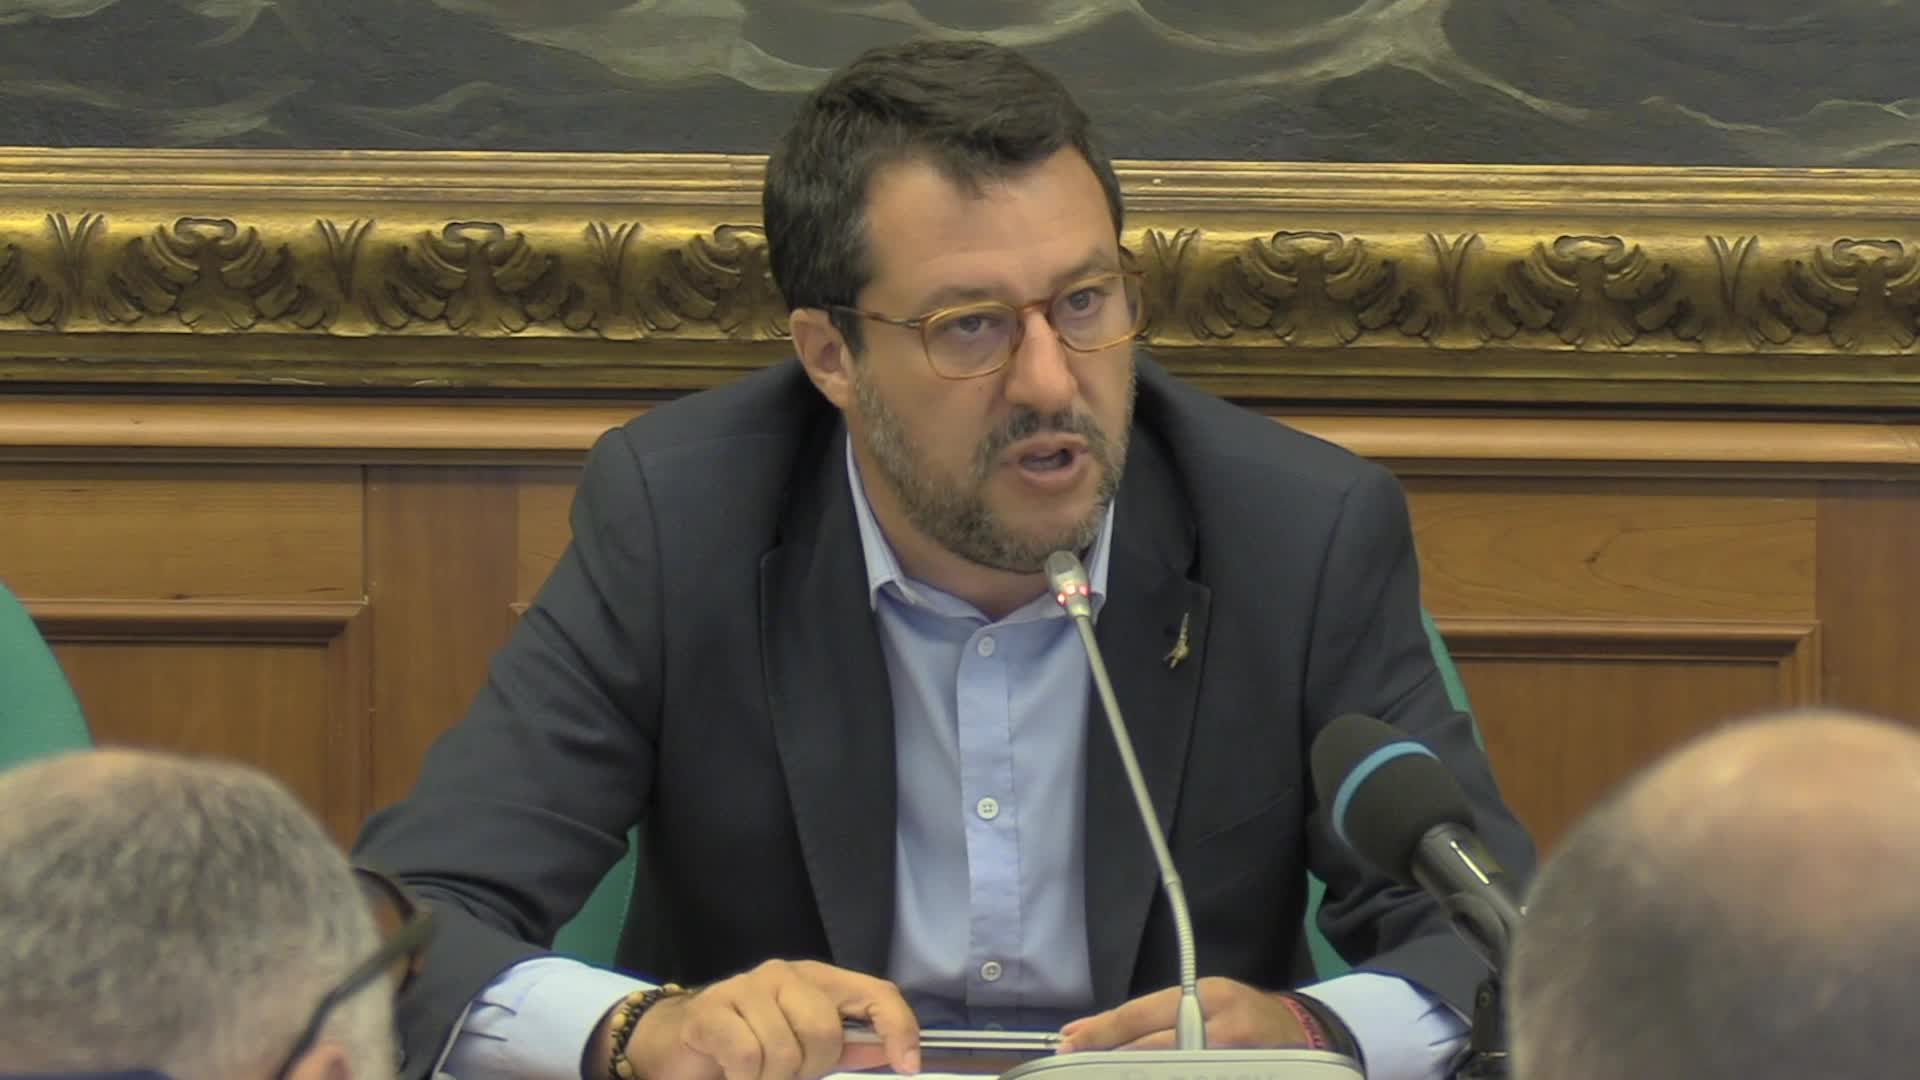 Retromarcia di Salvini: "Viva la mascherina, rispettiamo le regole"